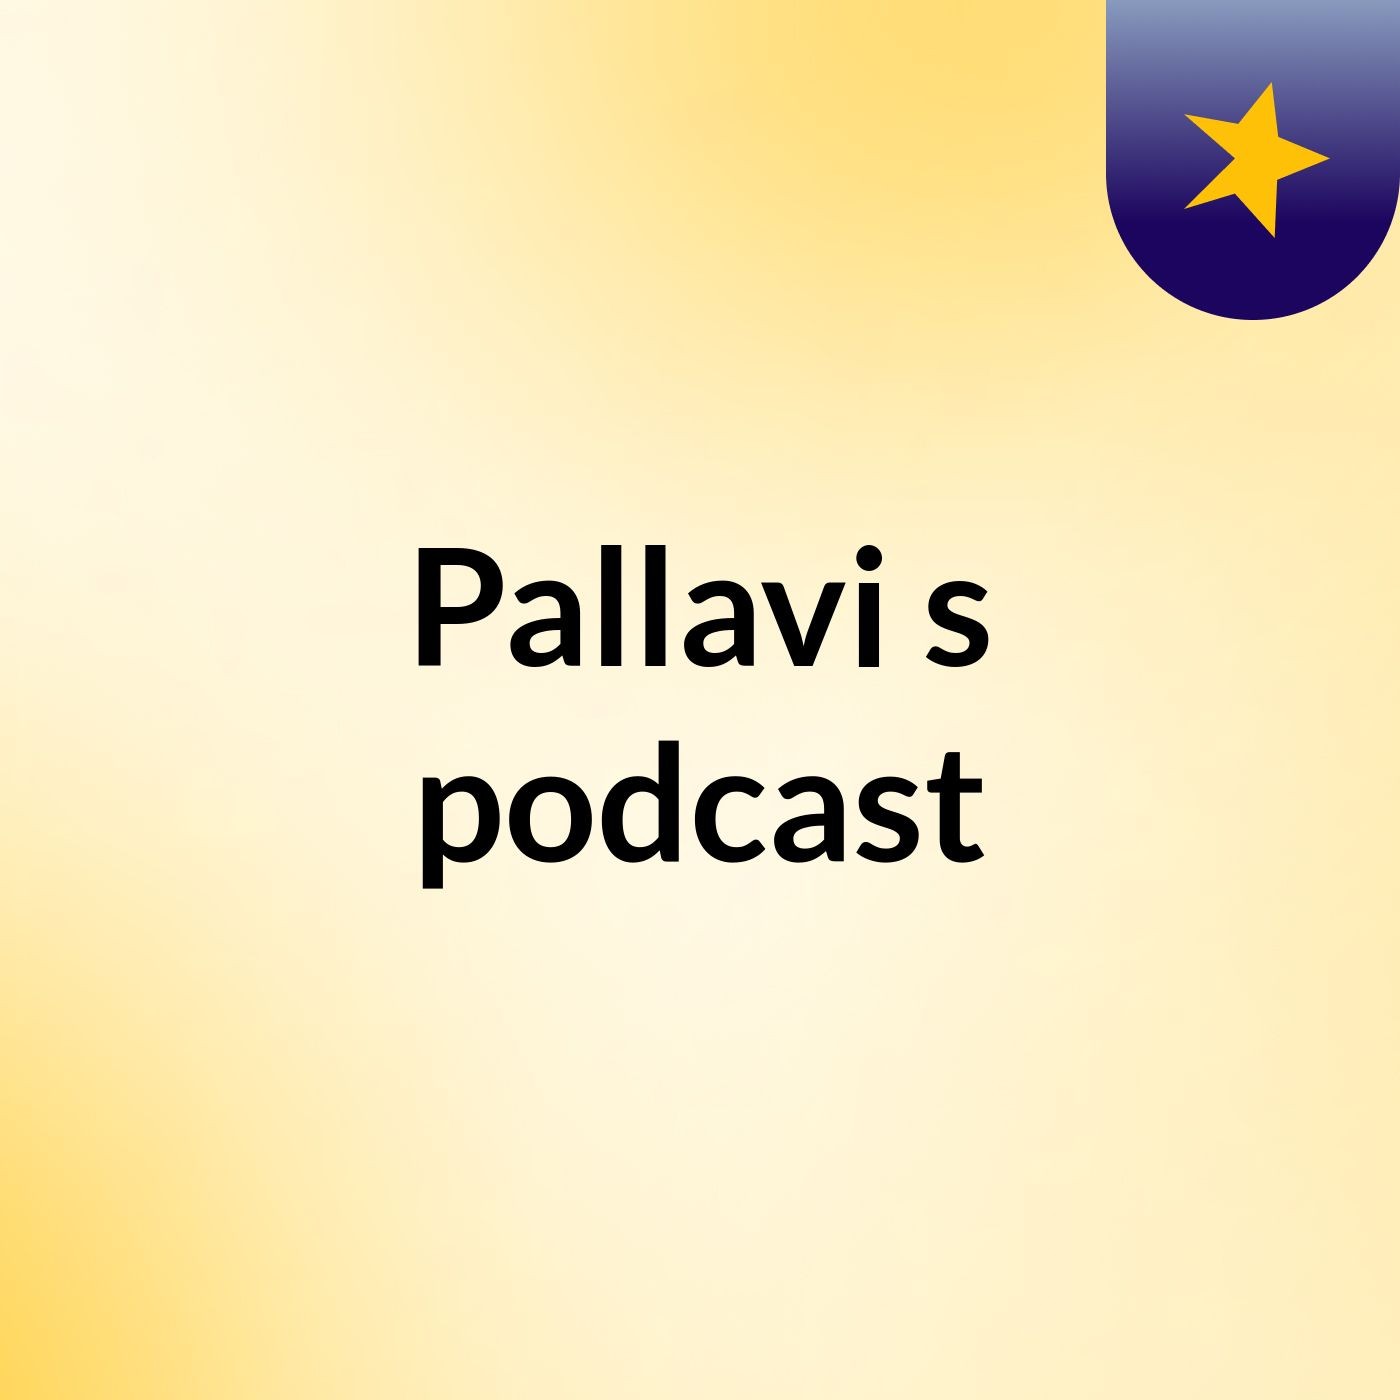 Episode 10 - Pallavi's podcast